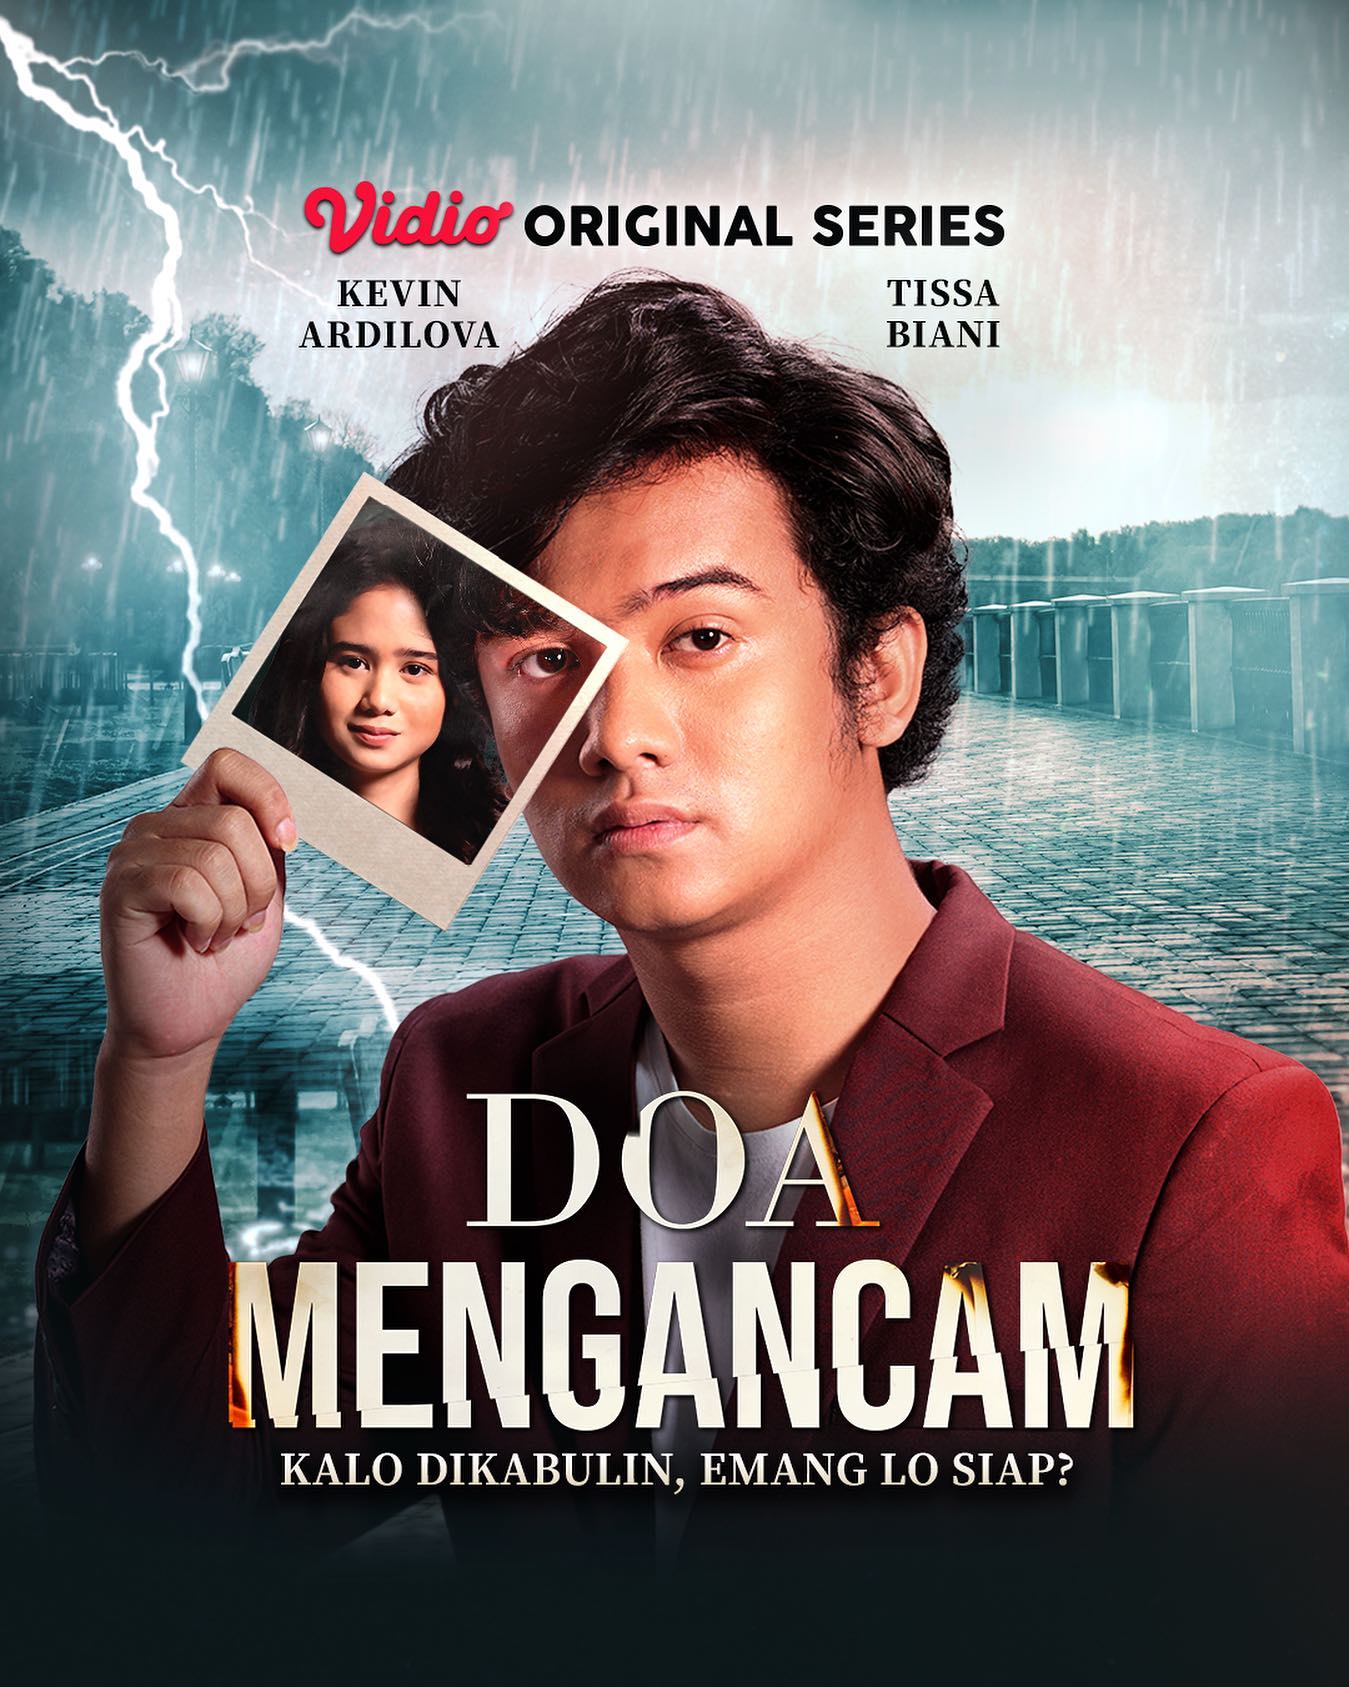 TV ratings for Doa Mengancam in Tailandia. Vidio TV series